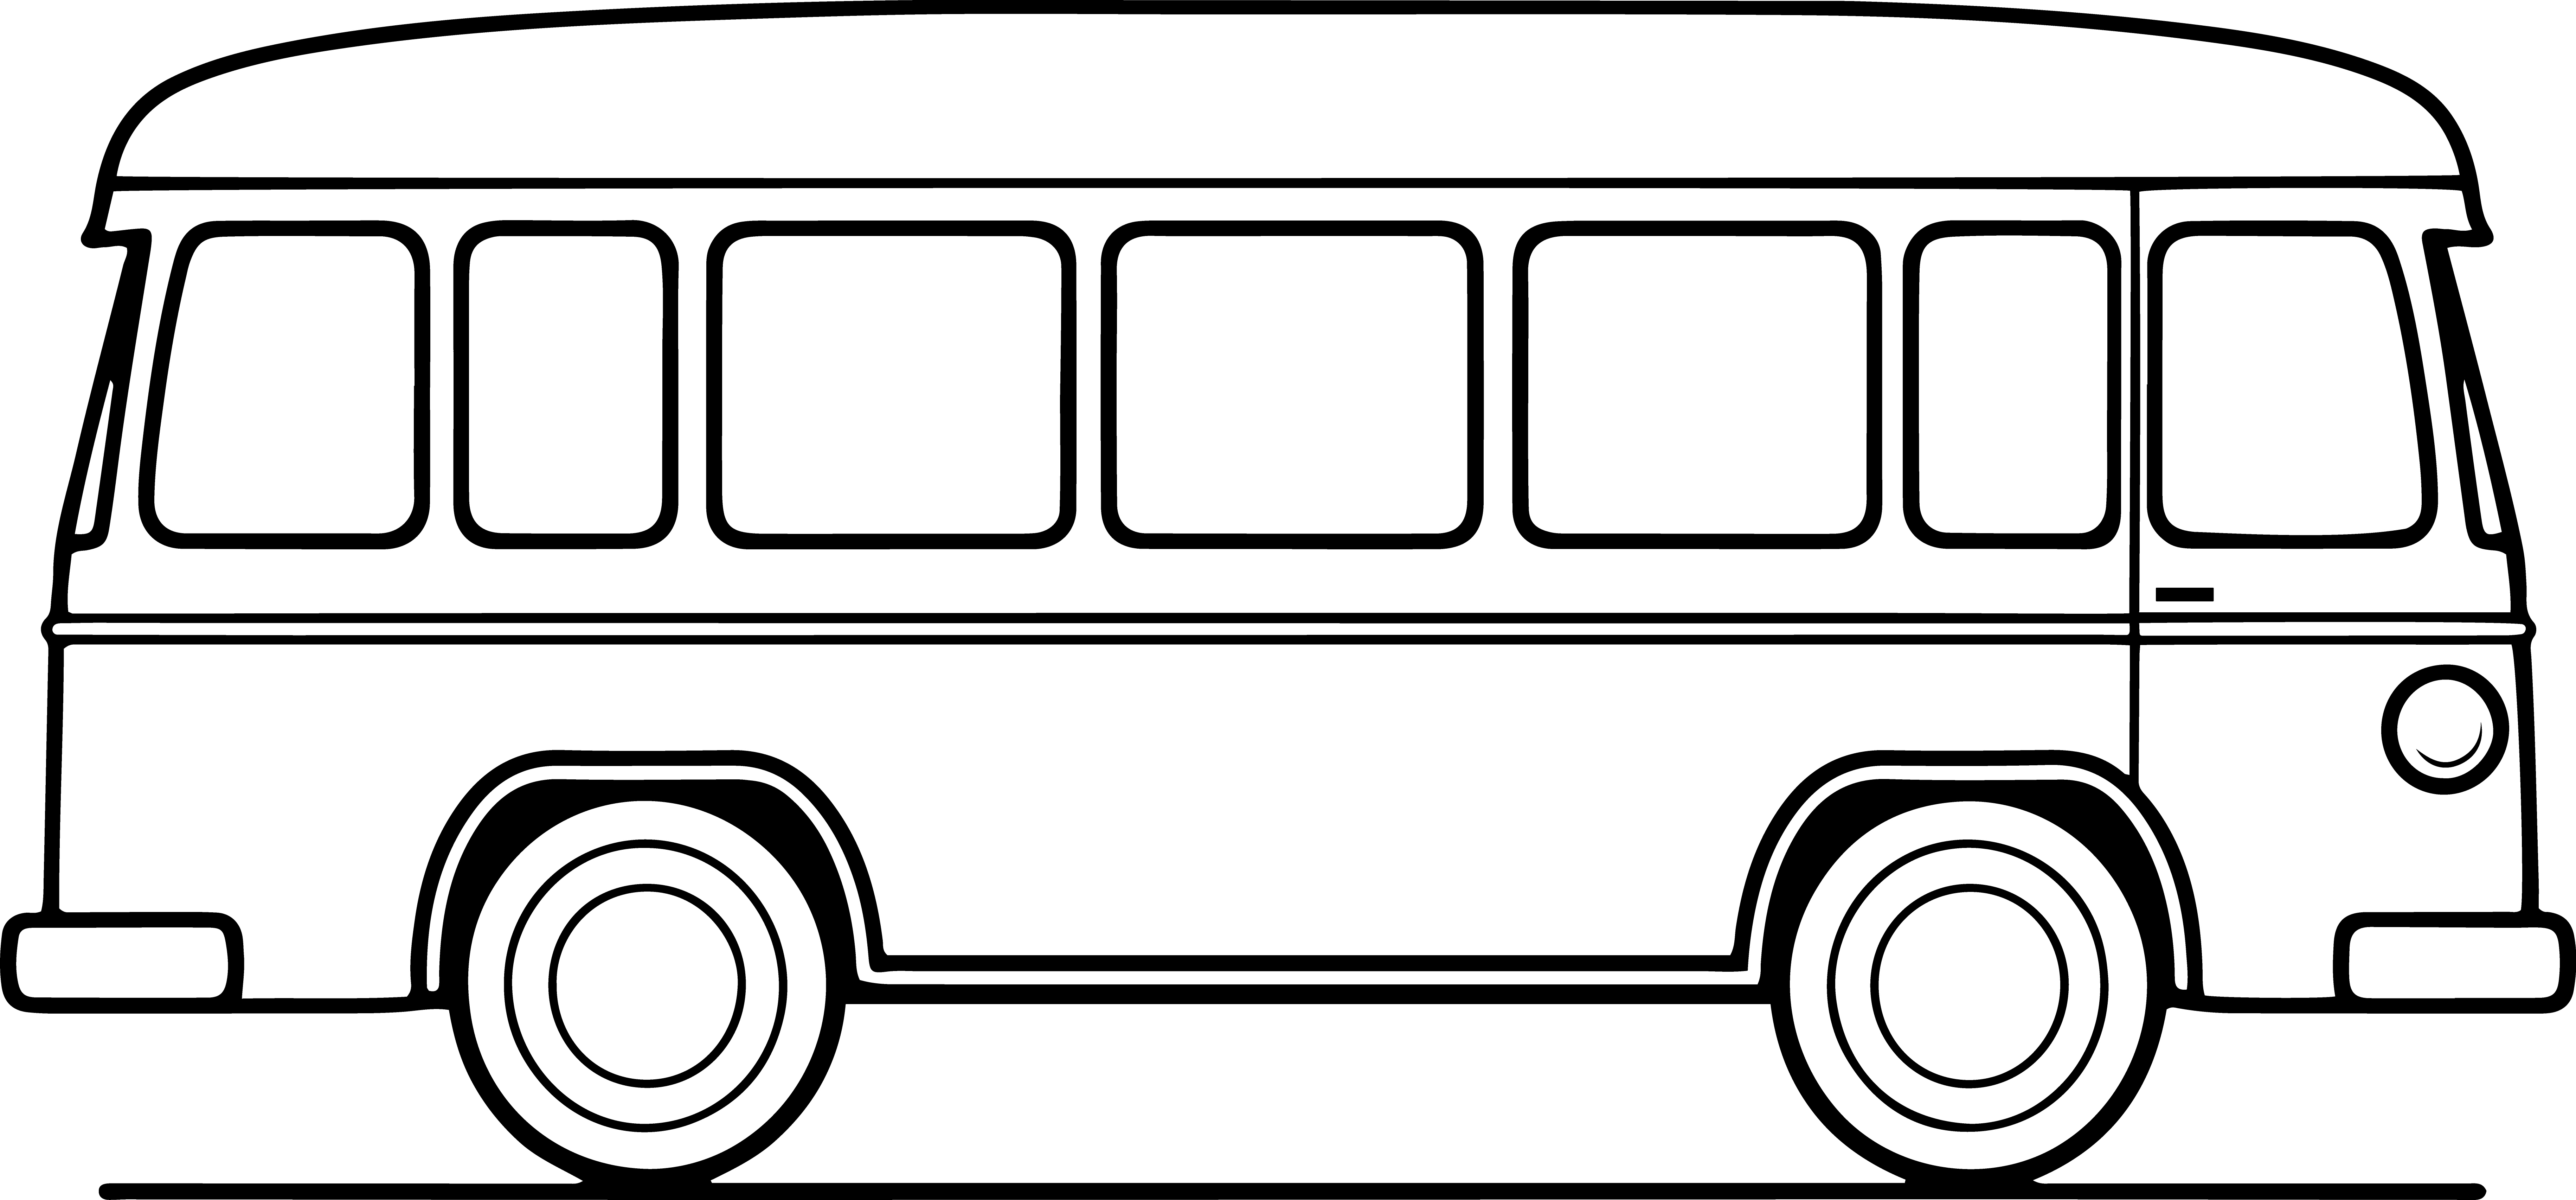 Раскраска детский школьный автобус формата А4 в высоком качестве